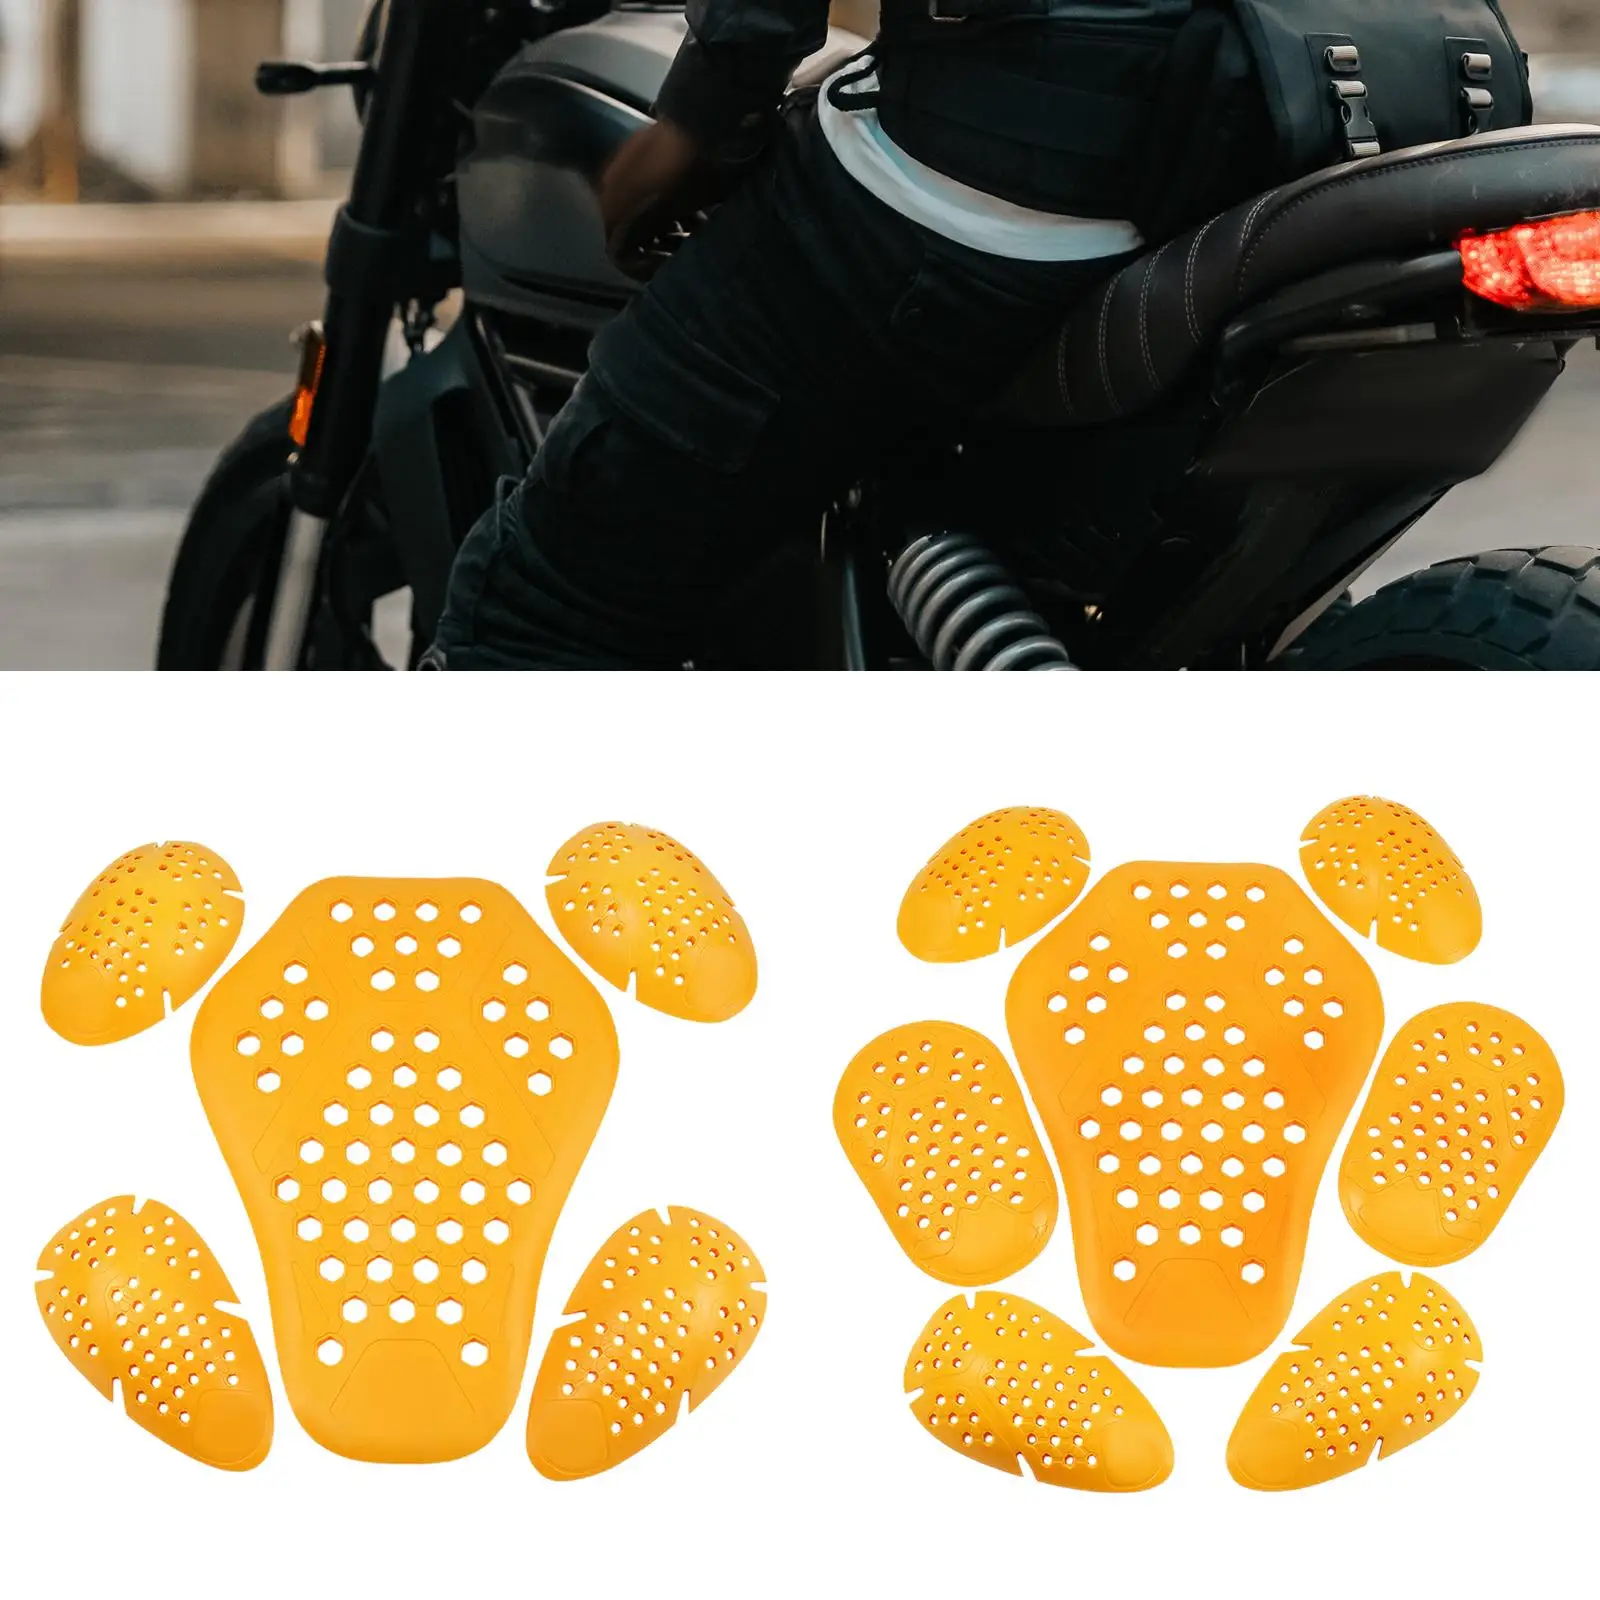 Motorcycle Jacket  Motorcycle Jacket Liner Moto Accessories Motorbike